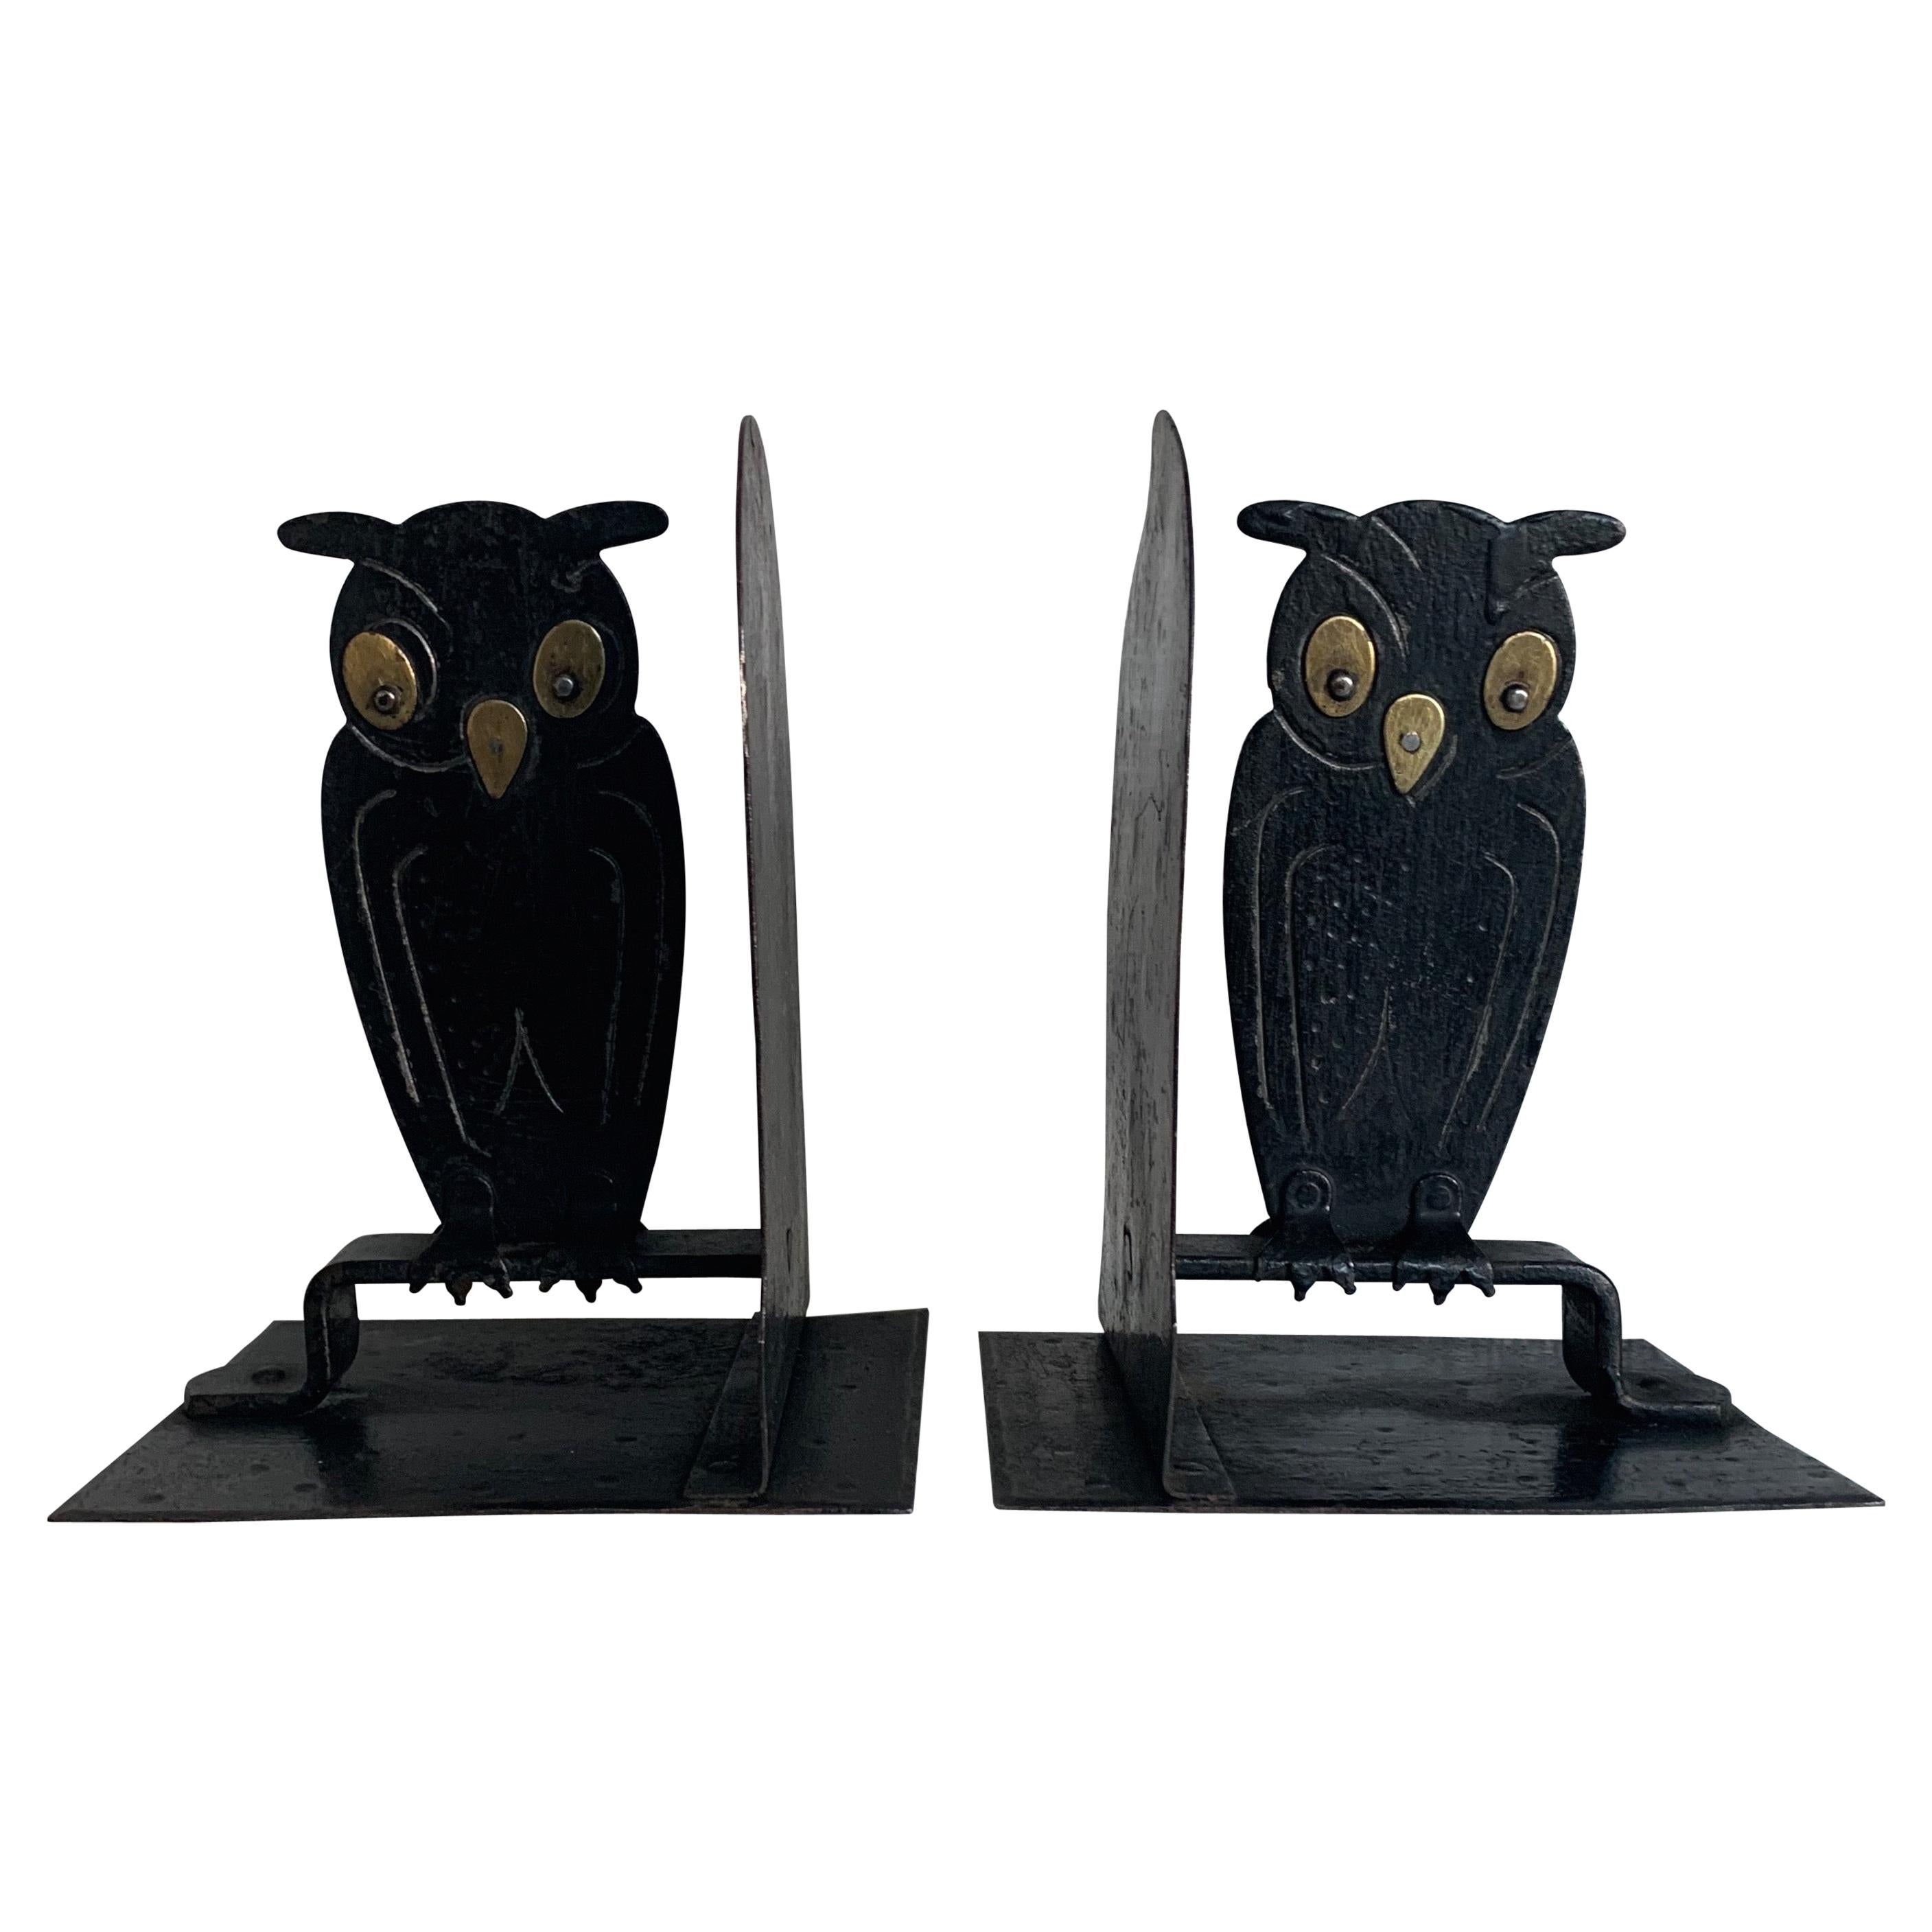 Paire de serre-livres en métal noir martelé Arts & Crafts Owl par Goberg:: Hugo Berger